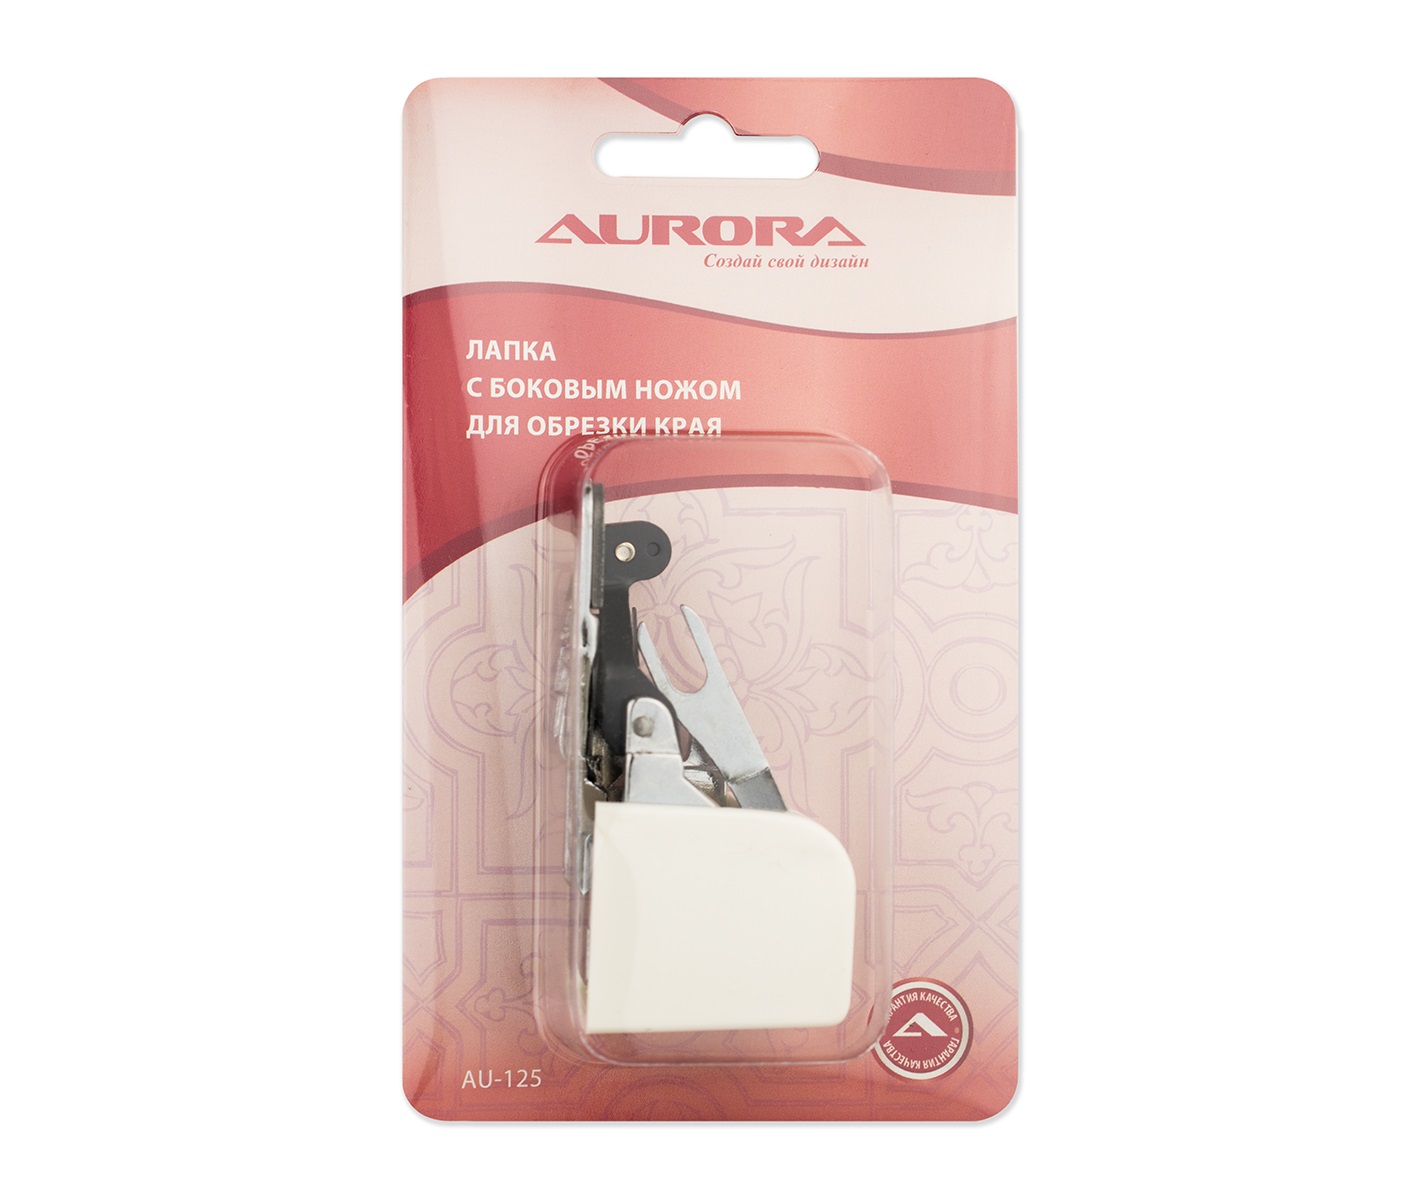 Лапка для швейных машин Aurora AU-125 с боковым ножом